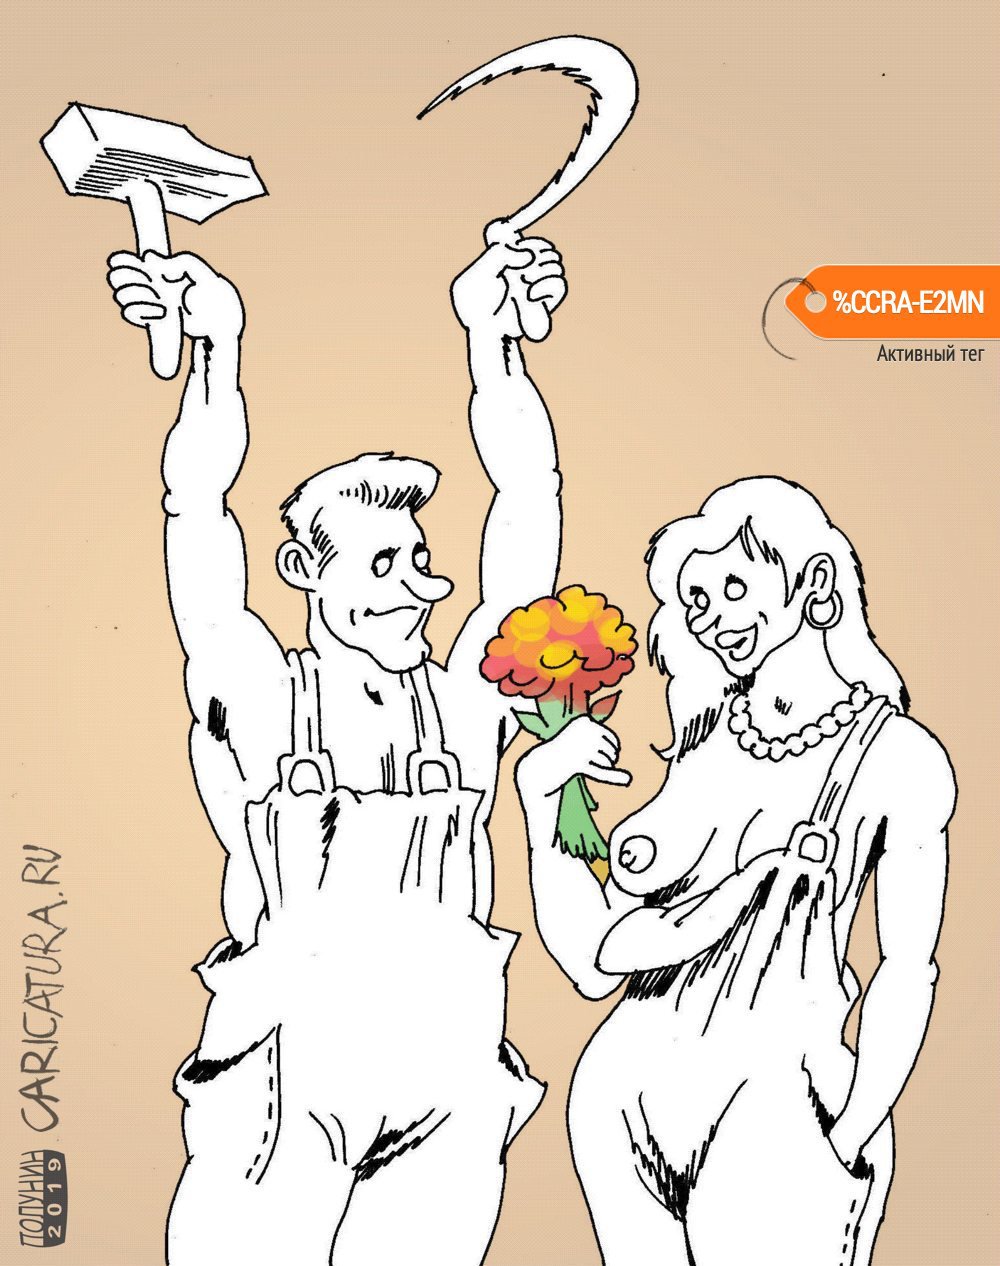 Карикатура "8 марта", Александр Полунин